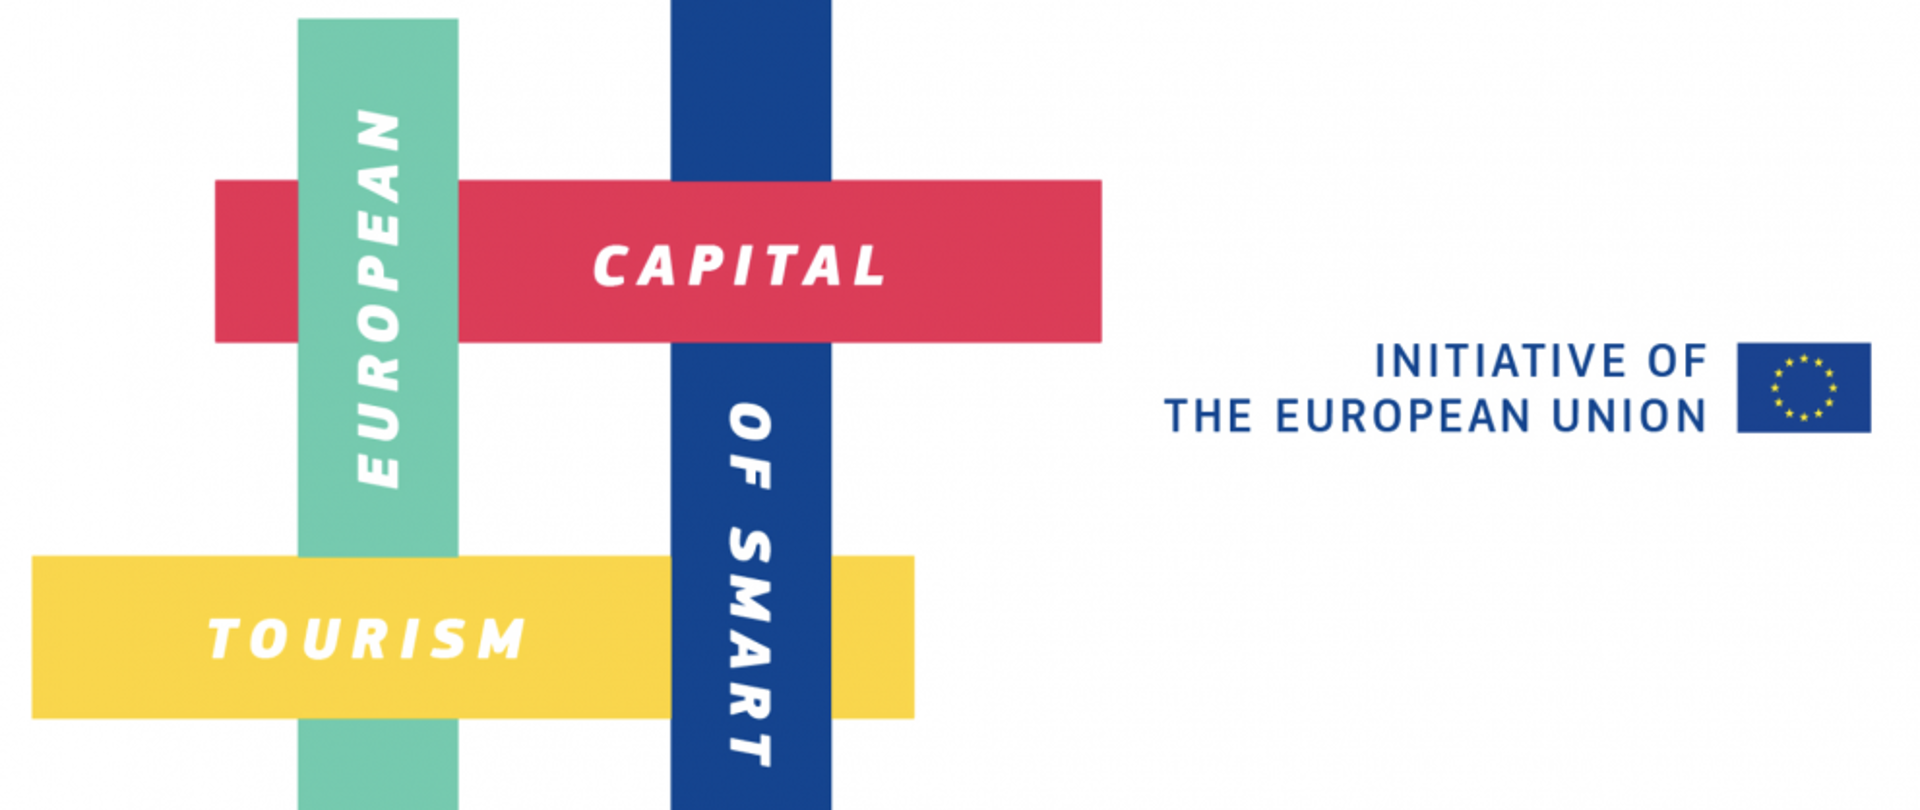 Logo programu: napisy European/ Capital/ Of smart/ Tourism na różnych kolorach tła. Z prawej: Initiative of the European Union